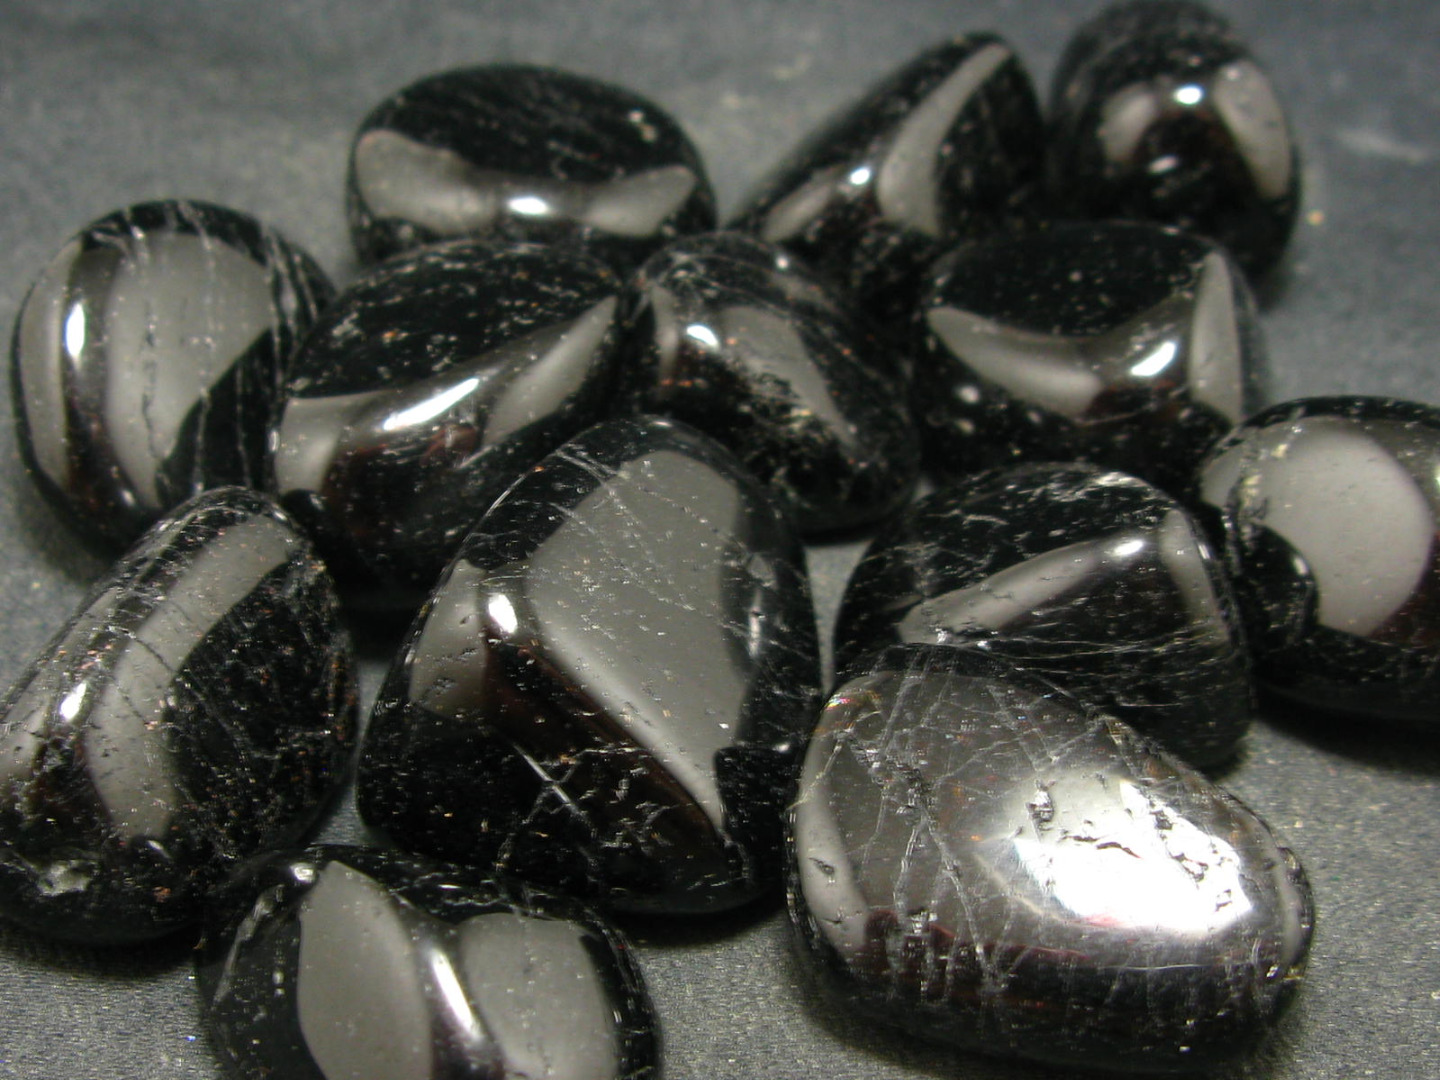 đá sapphire đen cho người sinh năm 1982